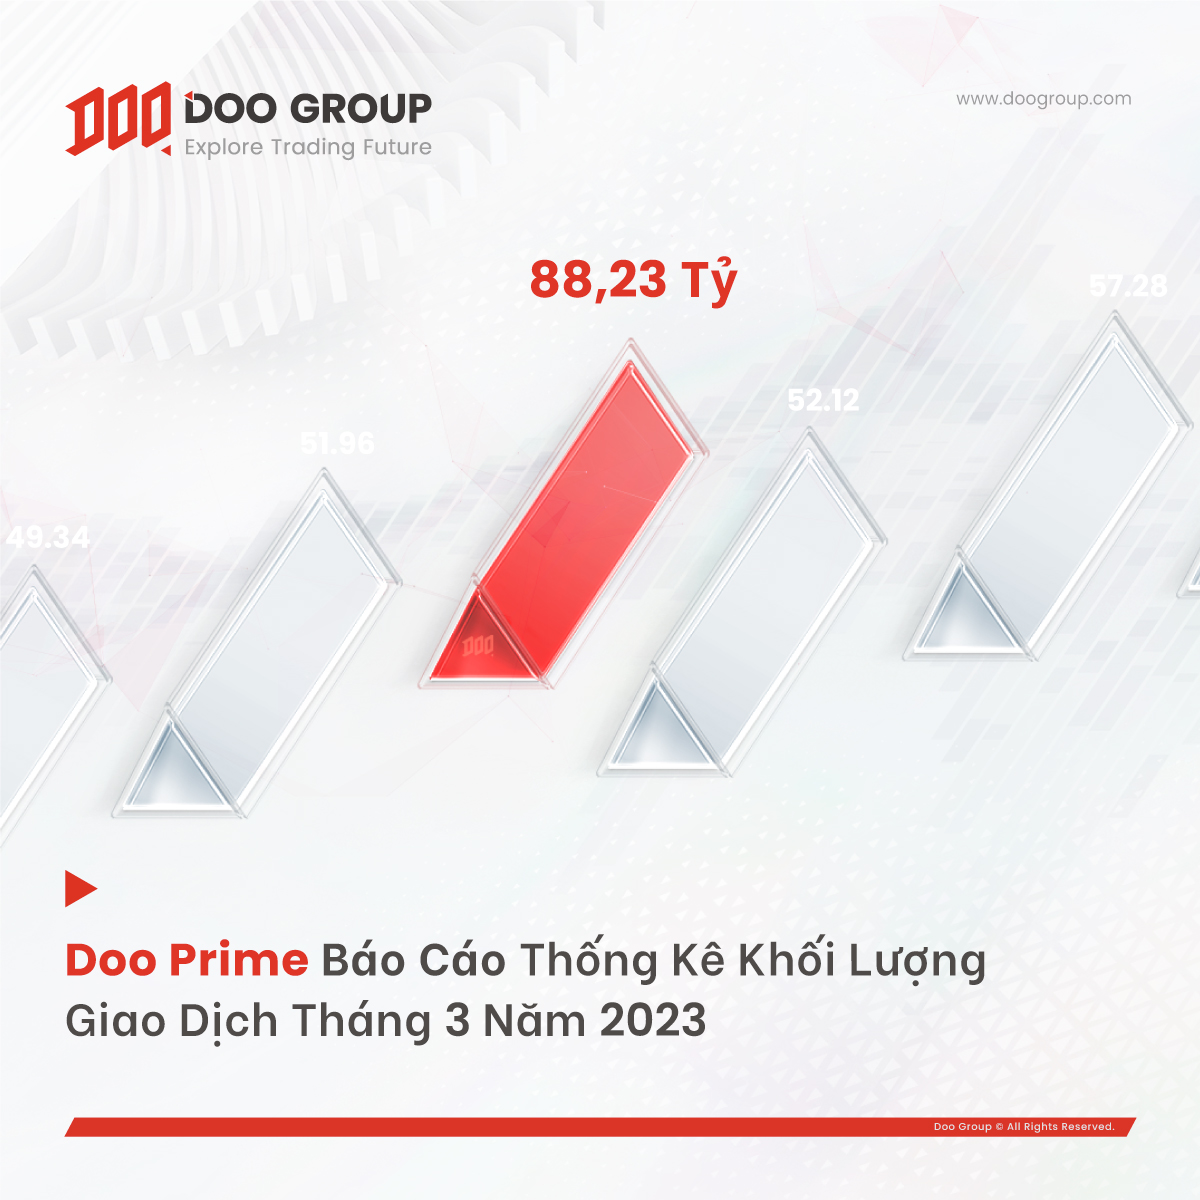 Doo Prime báo cáo thống kê khối lượng giao dịch tháng 3/2023